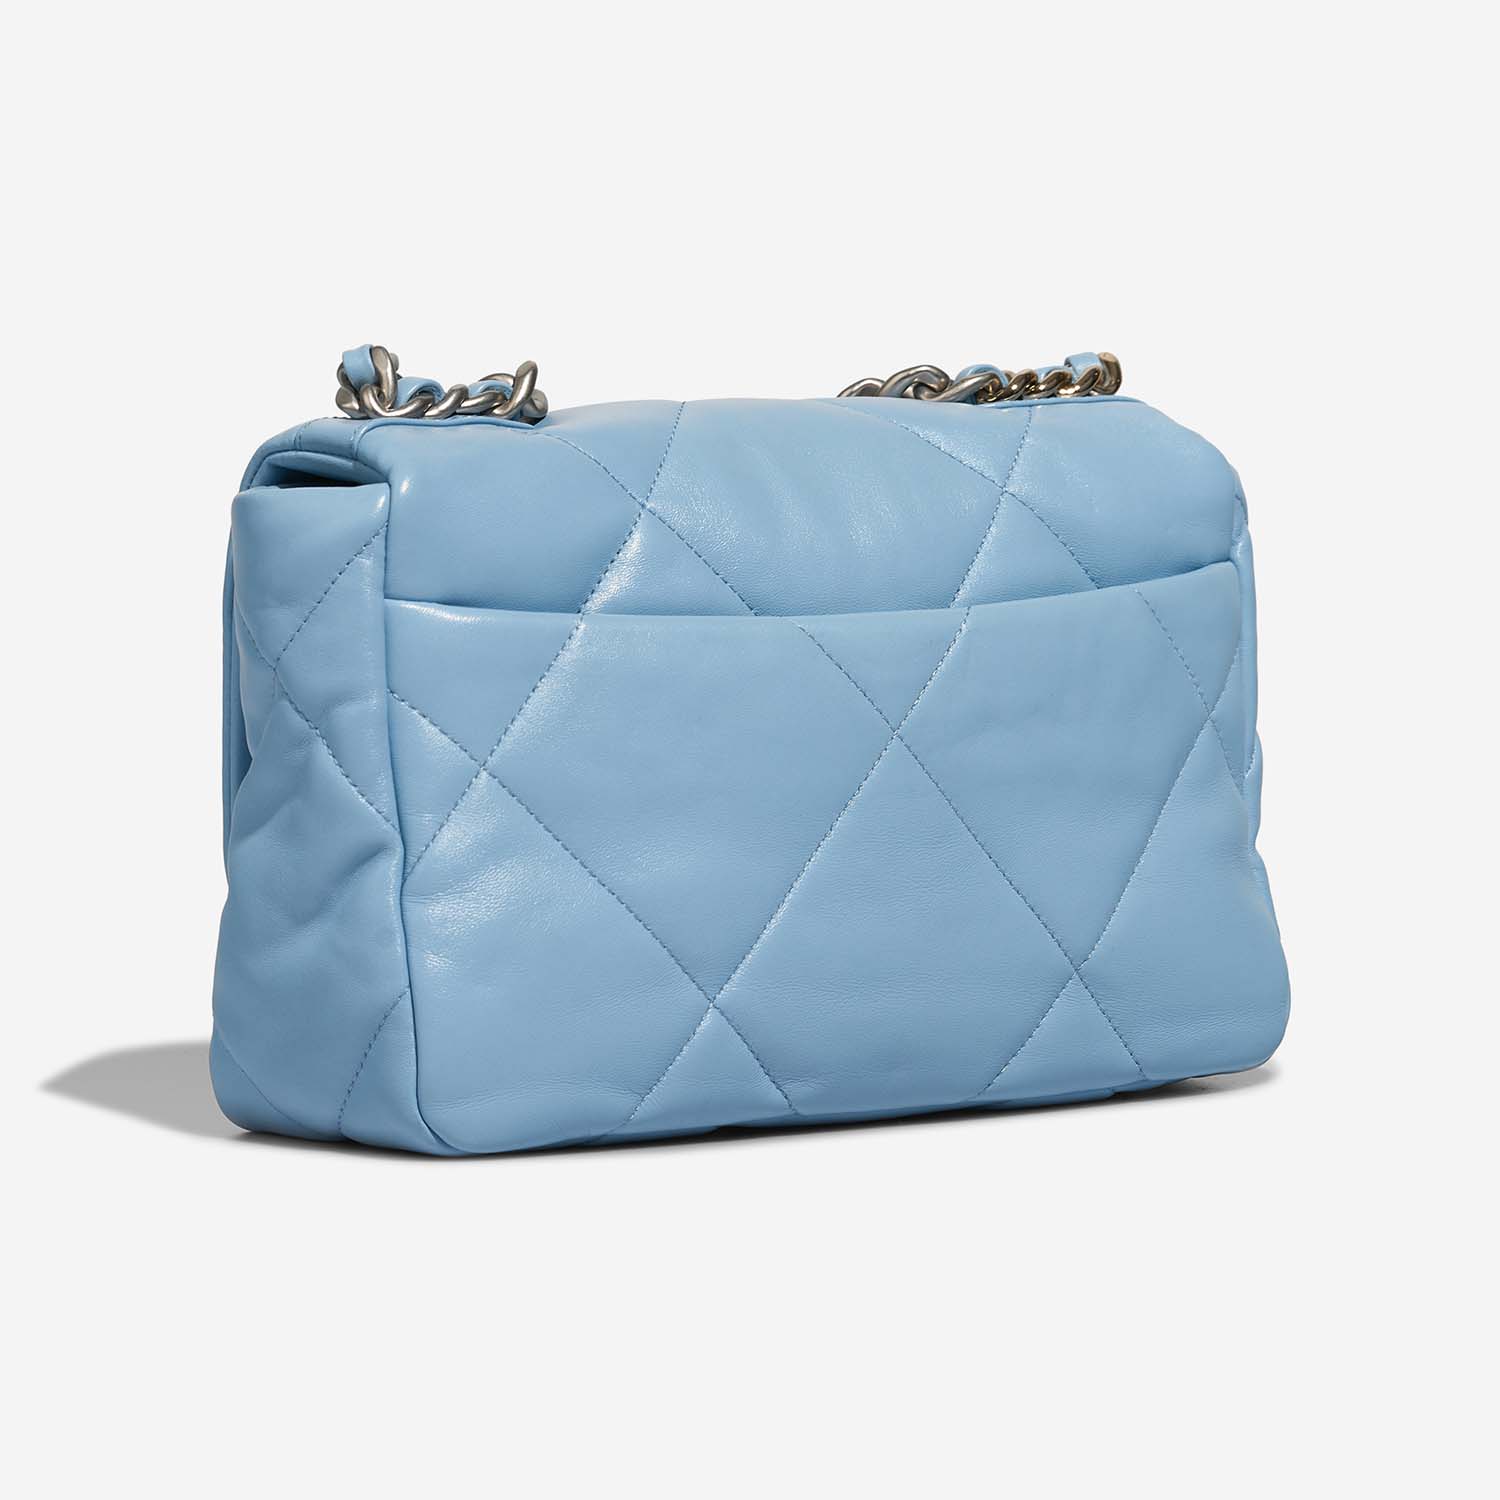 Chanel 19 Flapbag Lightblue Side Back | Sell your designer bag on Saclab.com